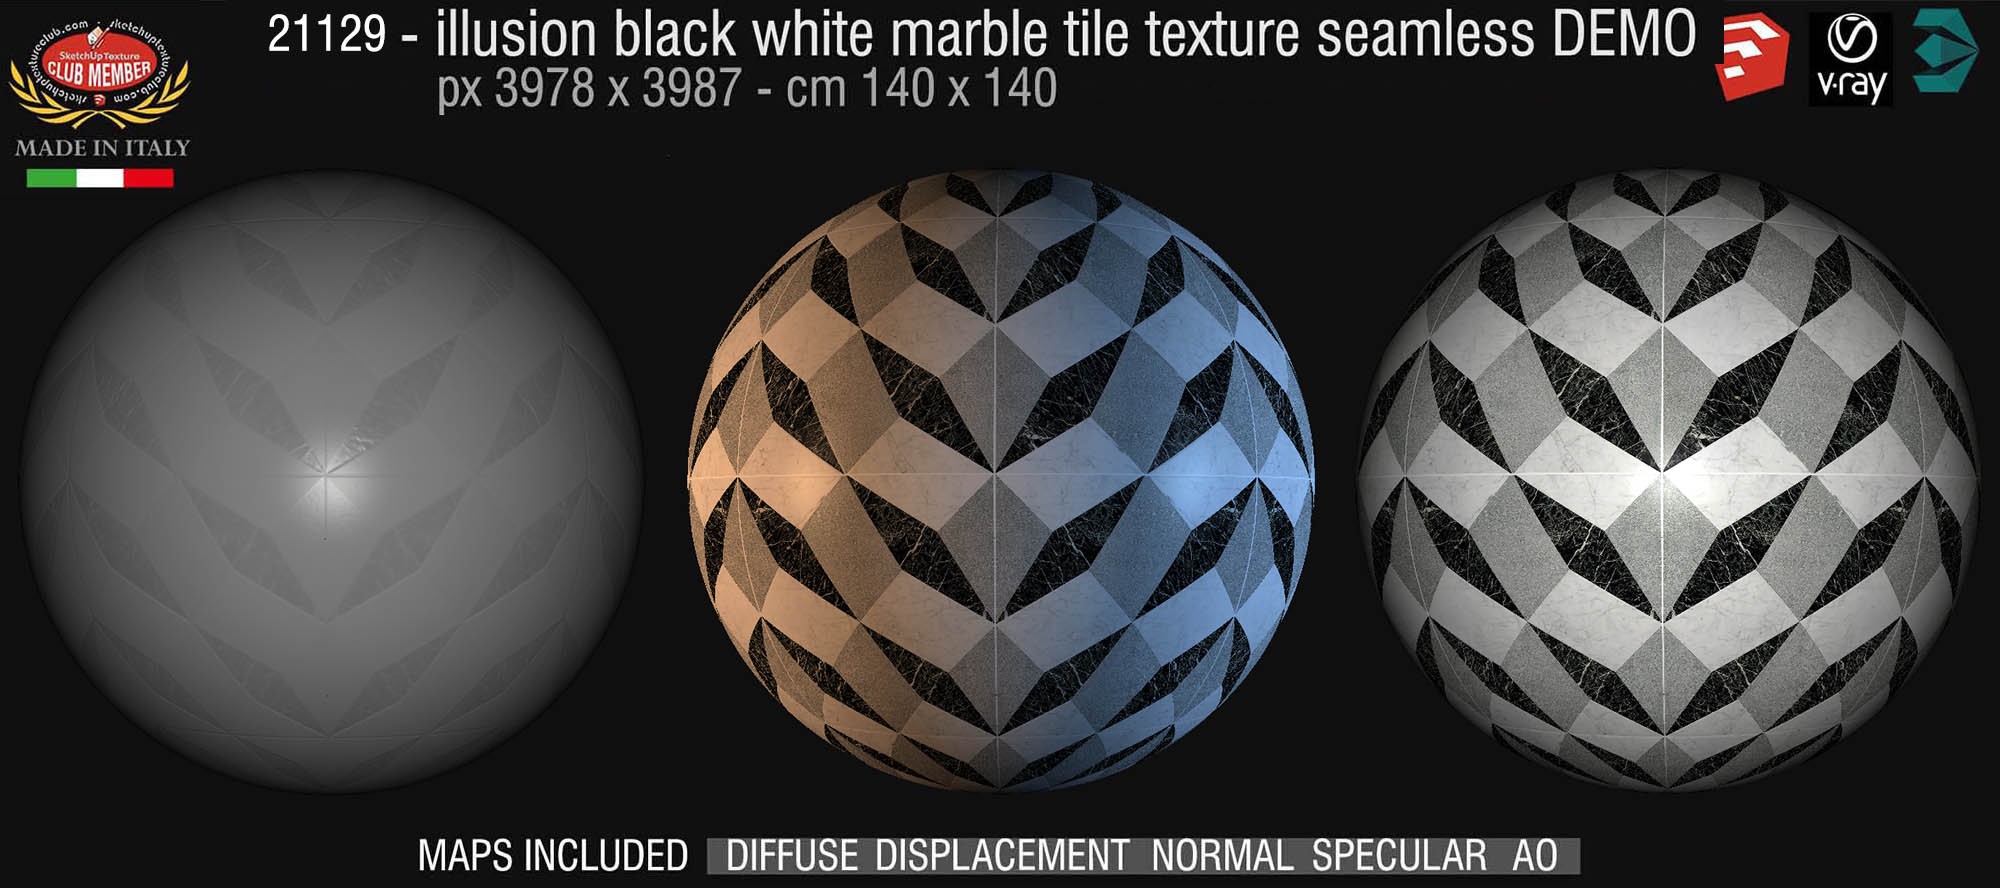 21129 Illusion black white marble floor tile texture seamless + maps DEMO